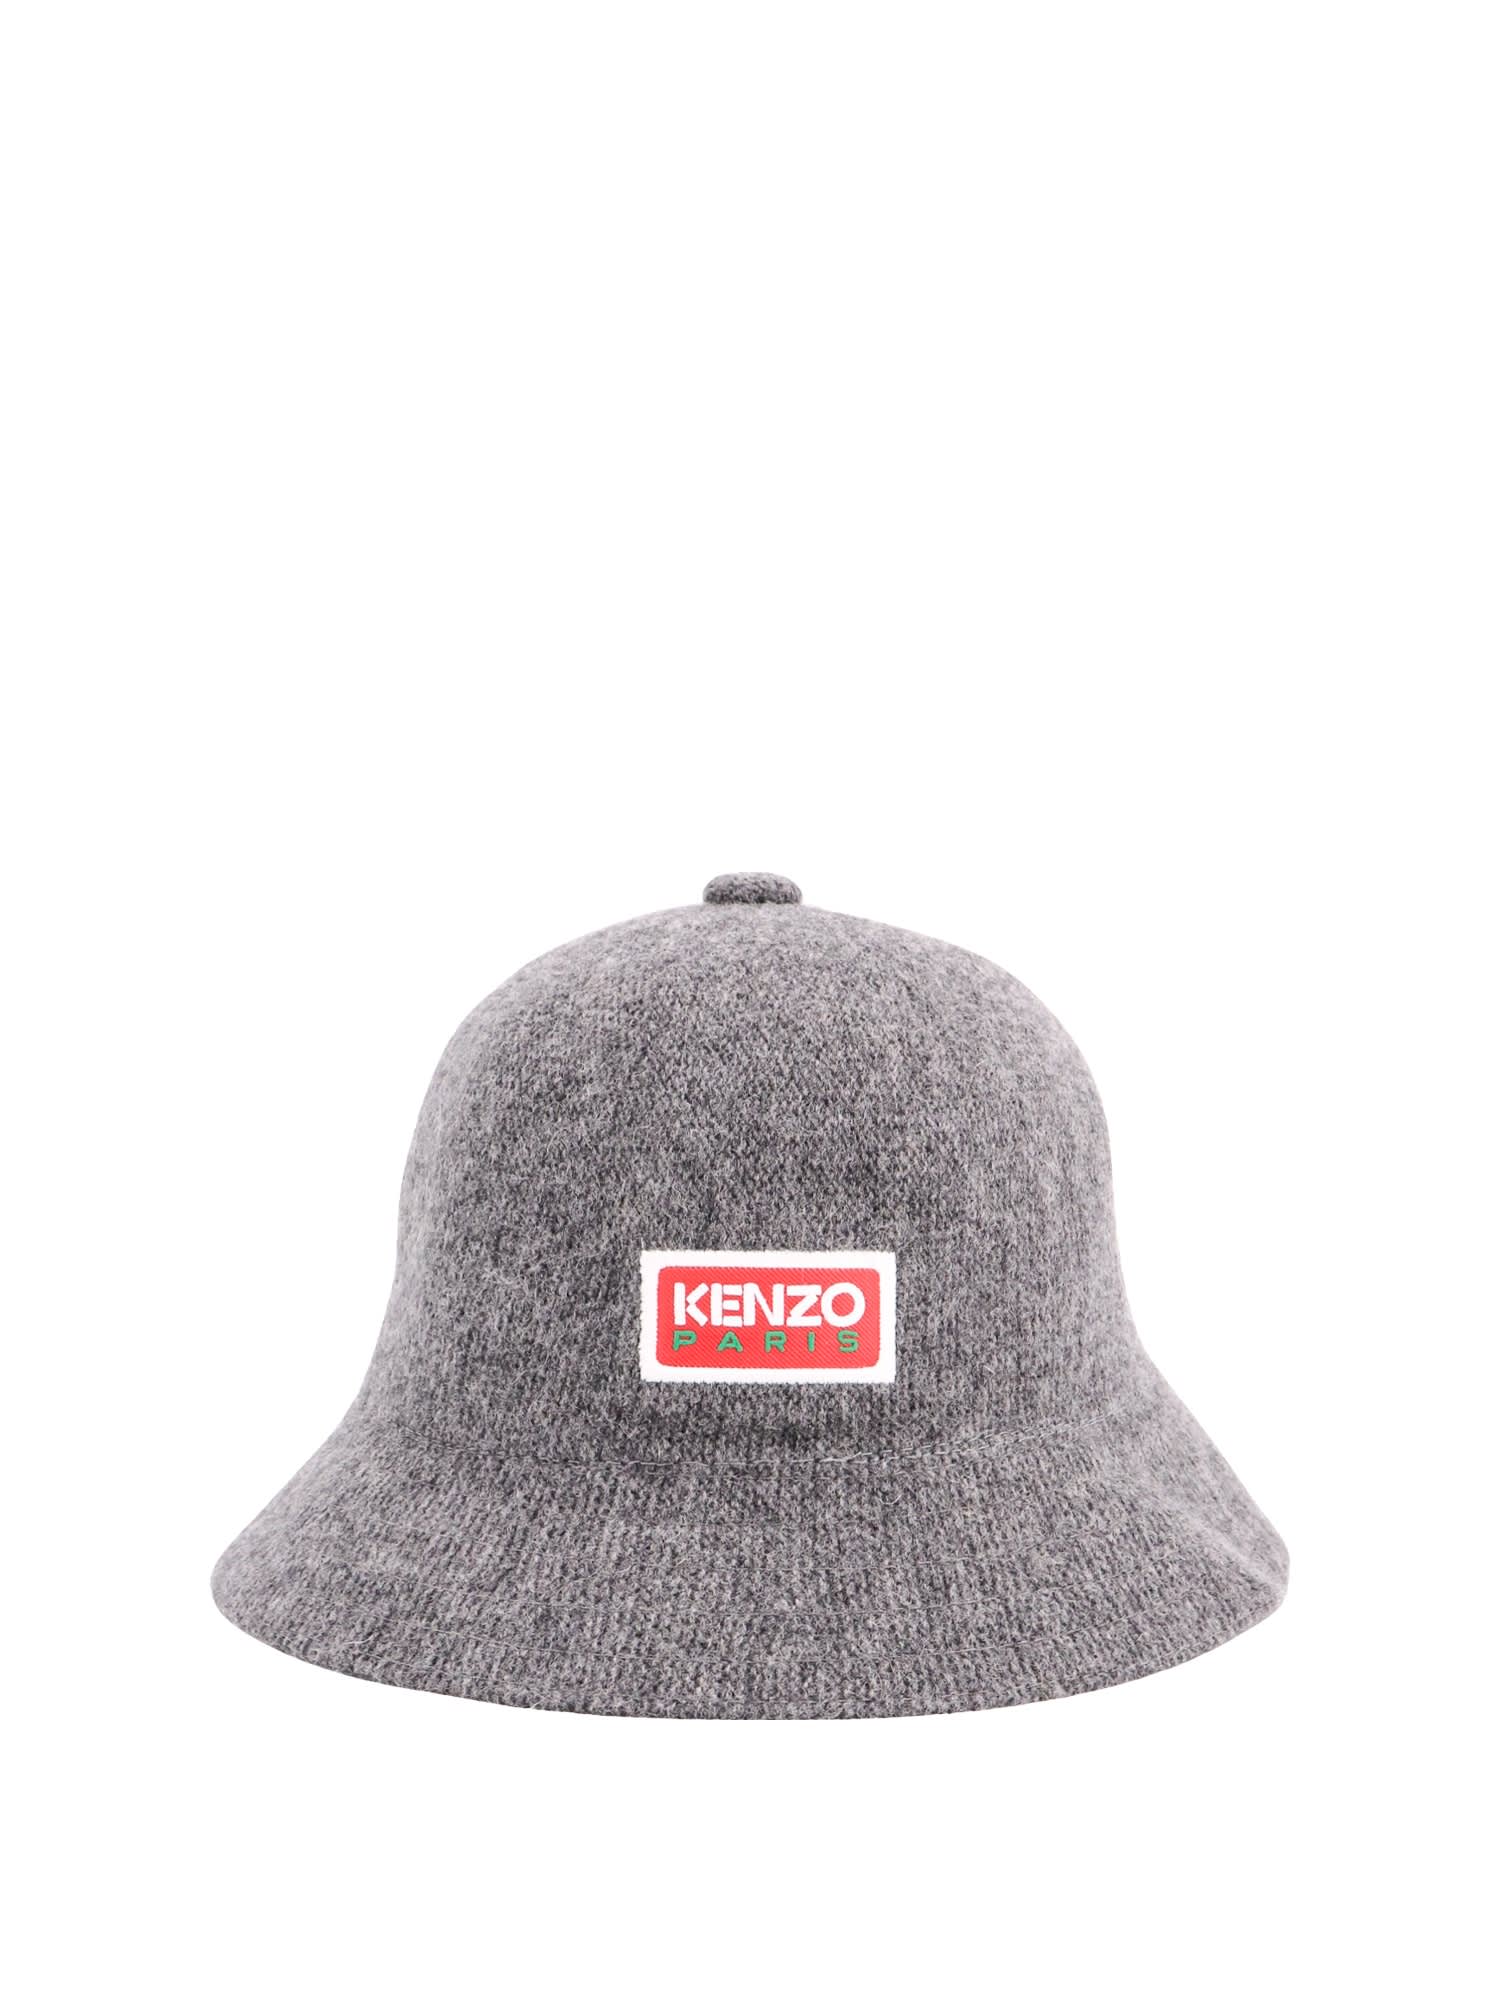 Kenzo Hat In Misty Grey